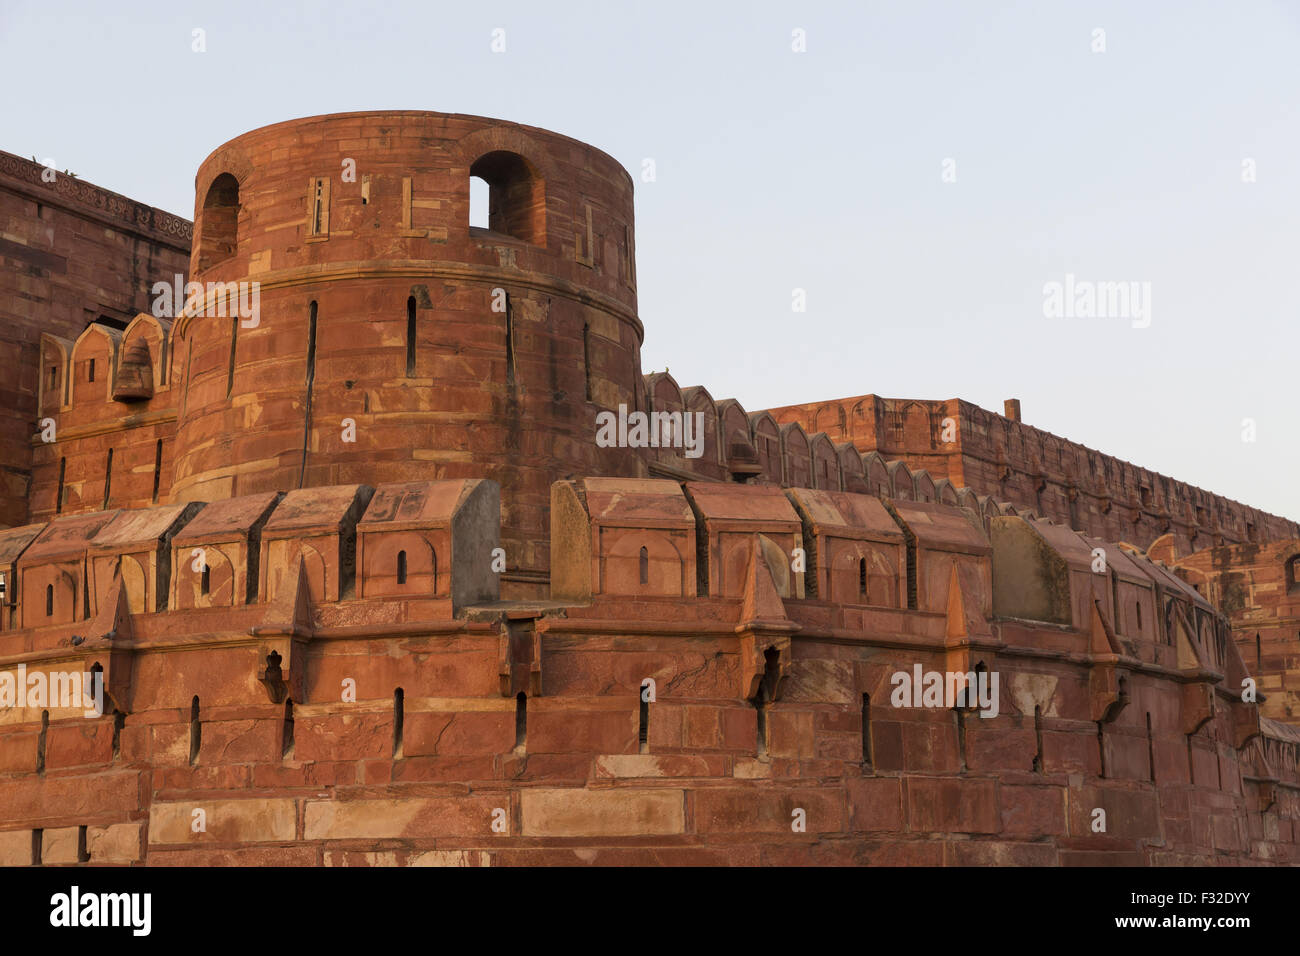 Fortifications de ville fortifiée, fort d'Agra, Agra, Uttar Pradesh, Inde, Avril Banque D'Images